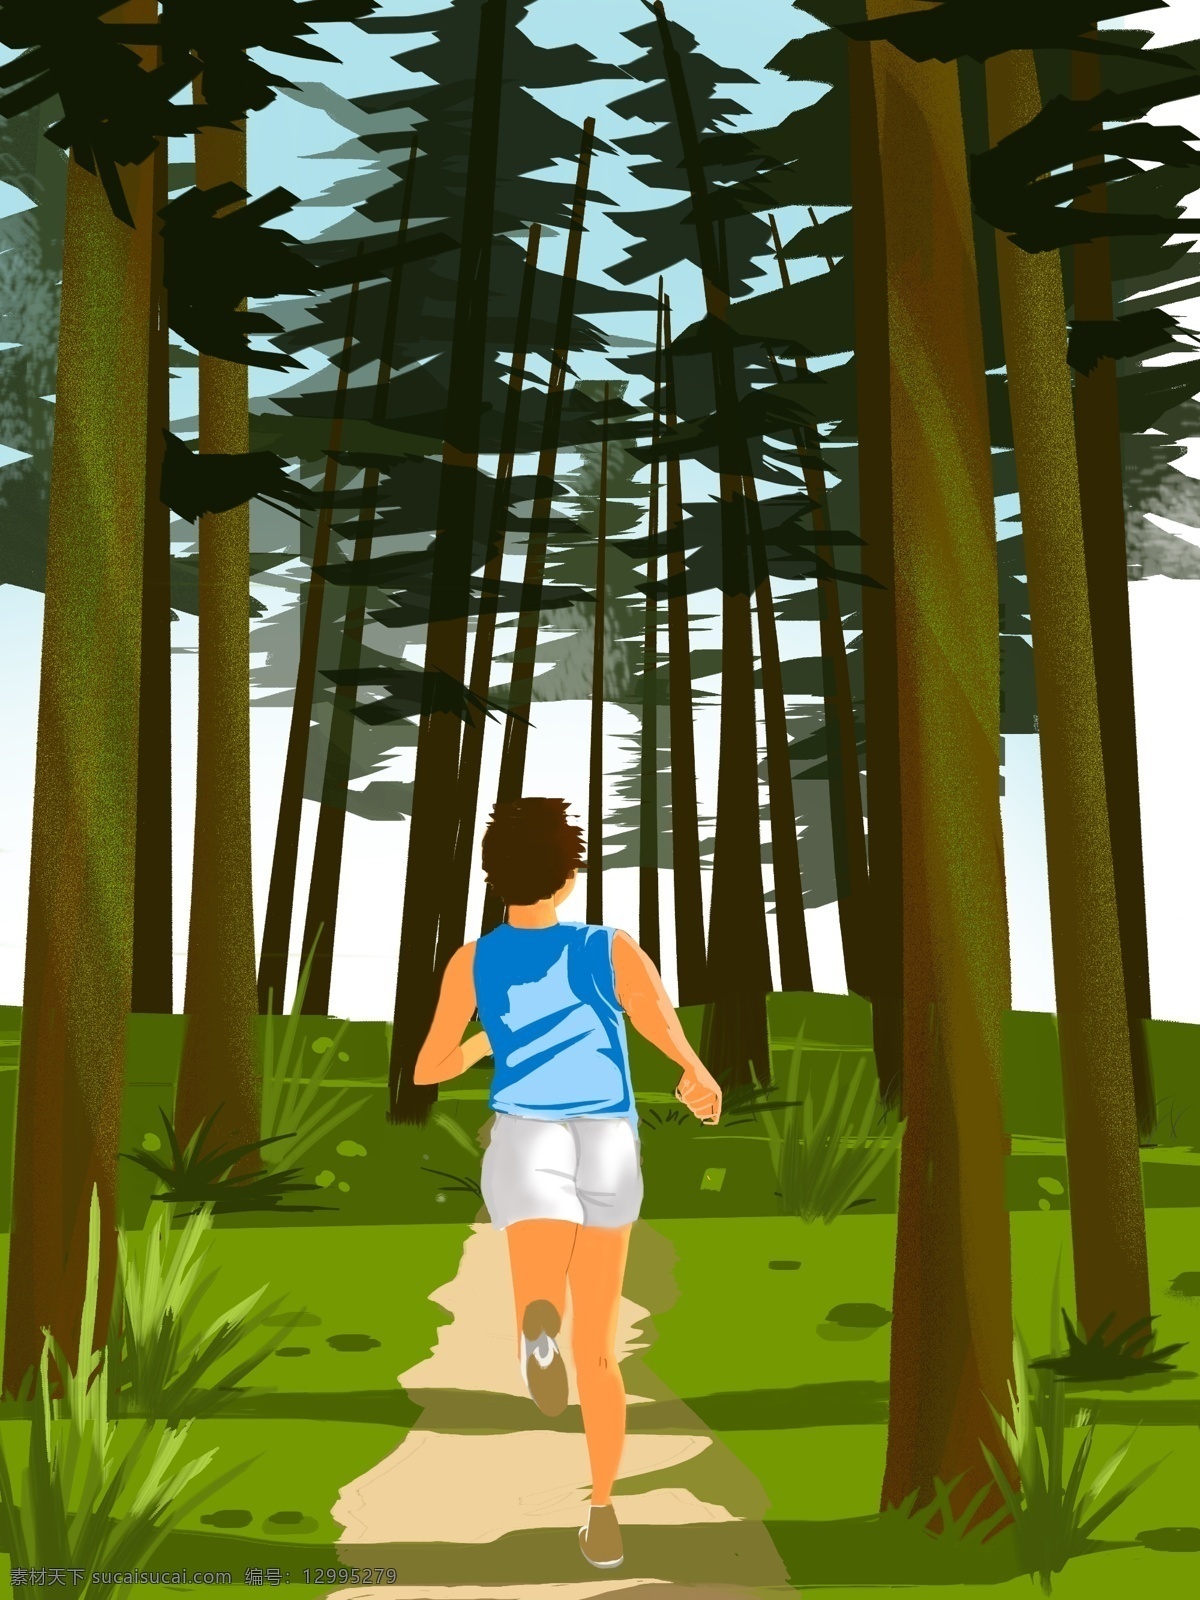 清晨 森林 中 漫 跑 人 运动 插画 跑步 健康 封面 宣传 原创 商业插画 绿色生活 锻炼 生活方式 清新自然 海报